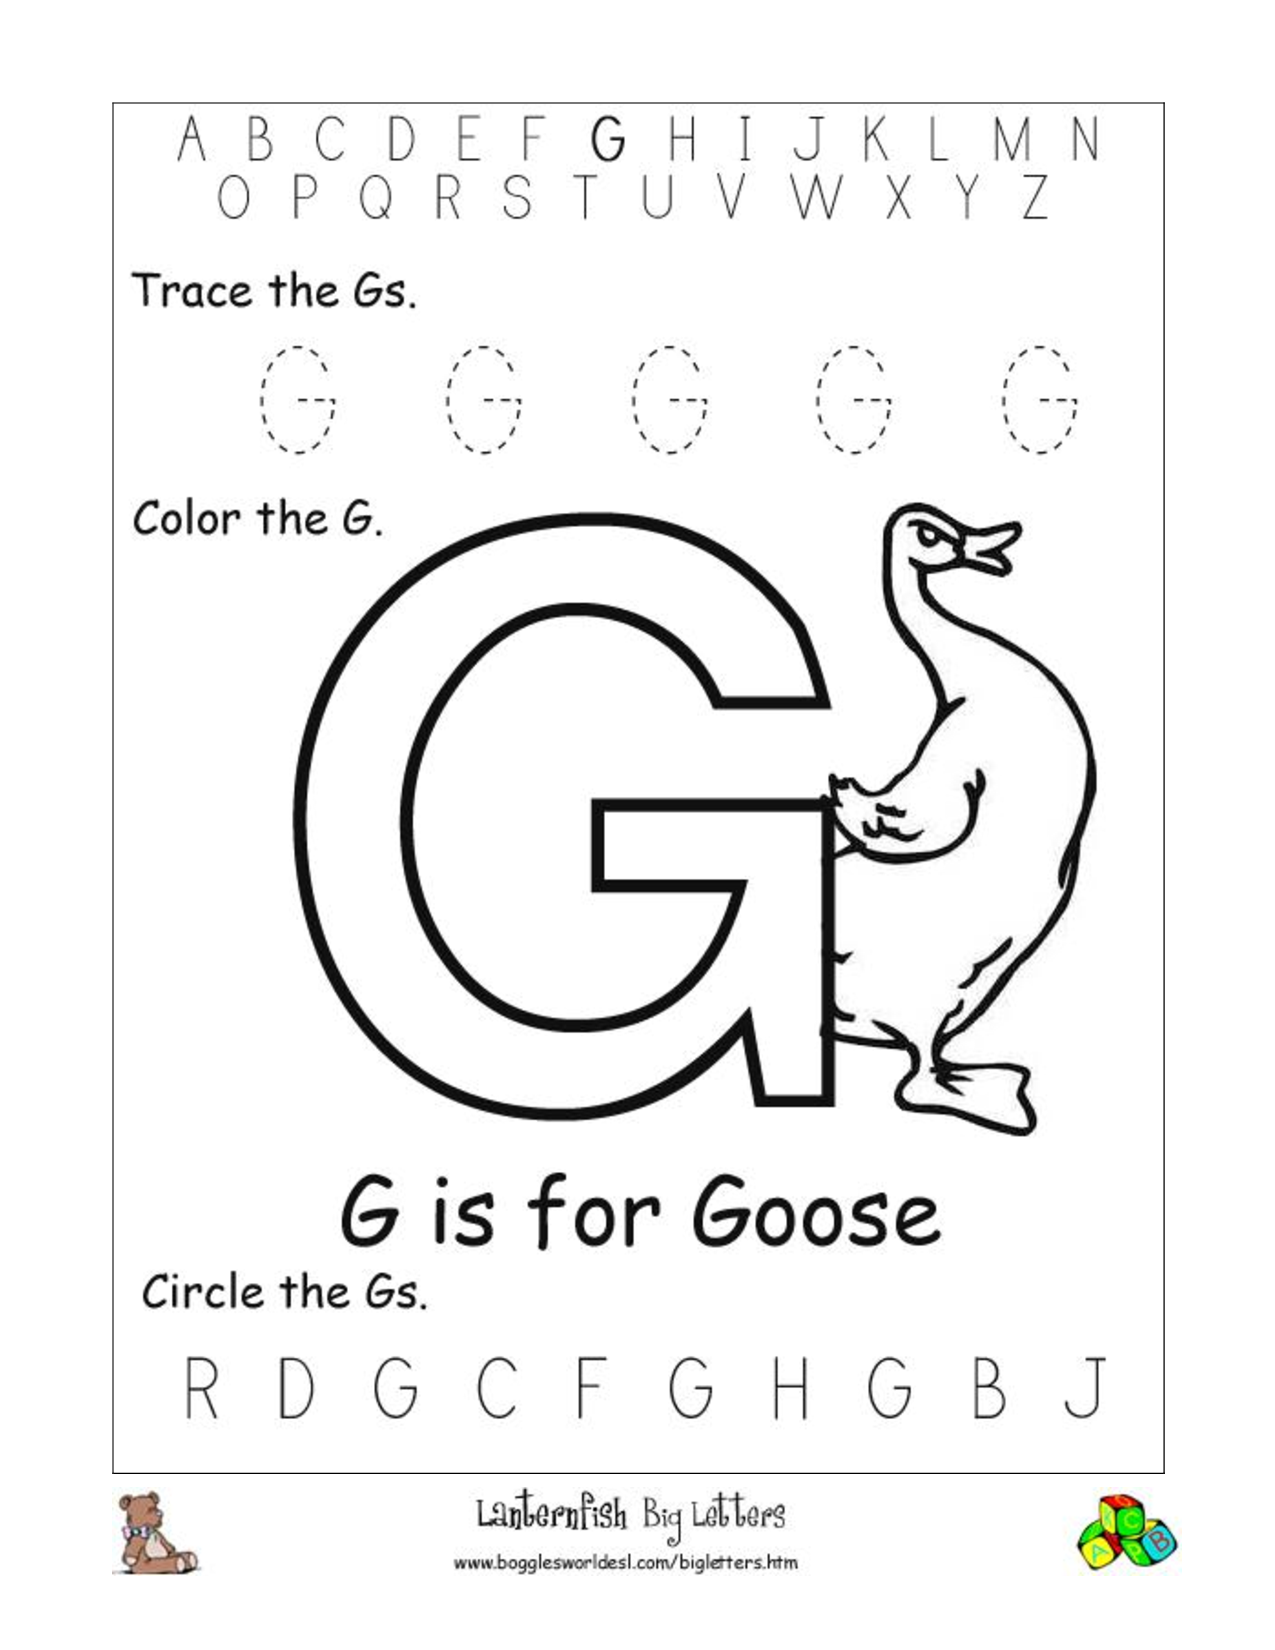 Free Printable Alphabet Letter G Worksheets Image